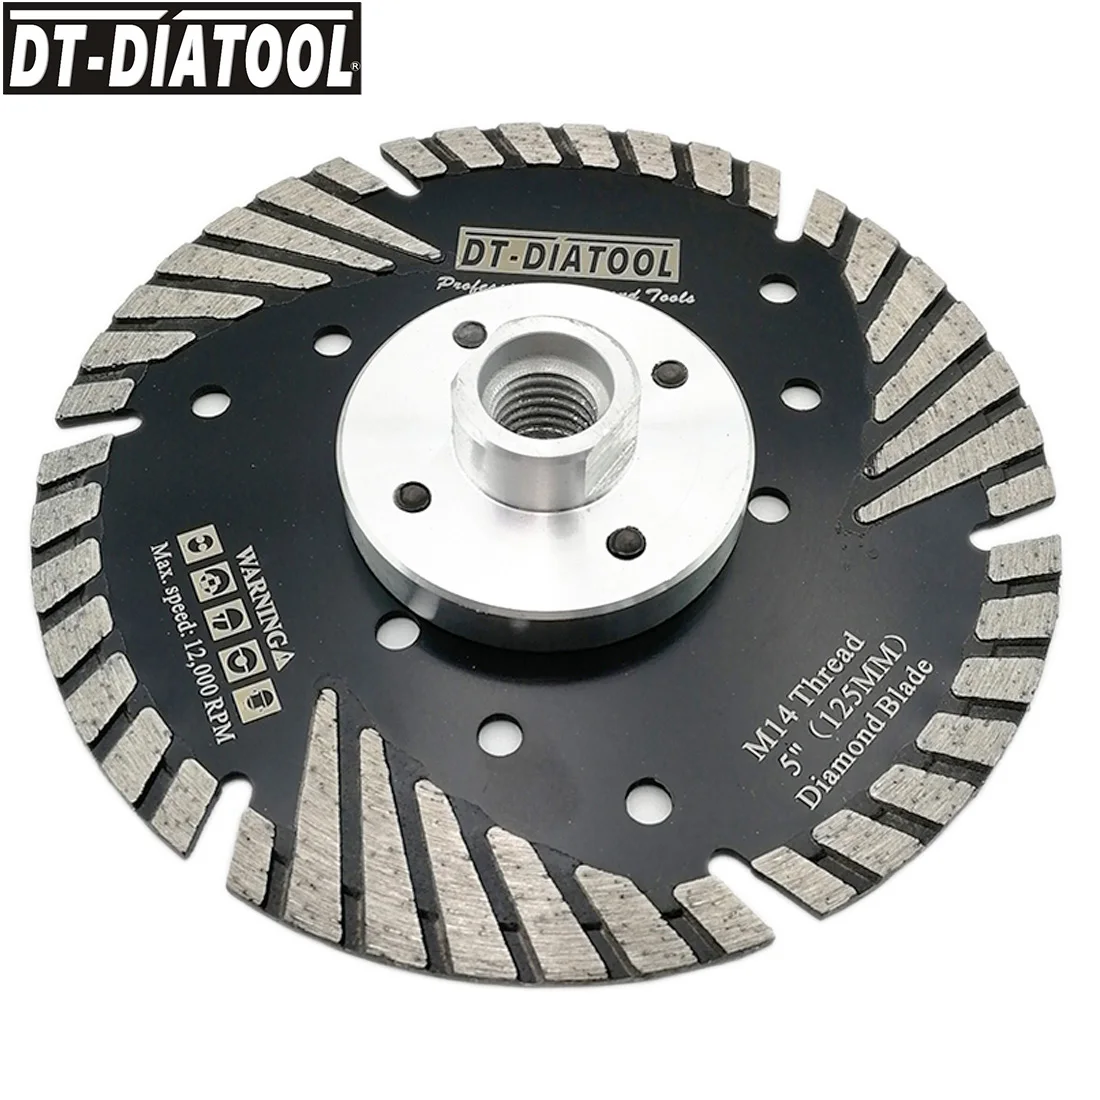 DT-DIATOOL 1 шт. 115 мм/4," M14 горячий пресс алмазный режущий диск с наклонной защитой зубы камень Бетон гранит мрамор пильный диск